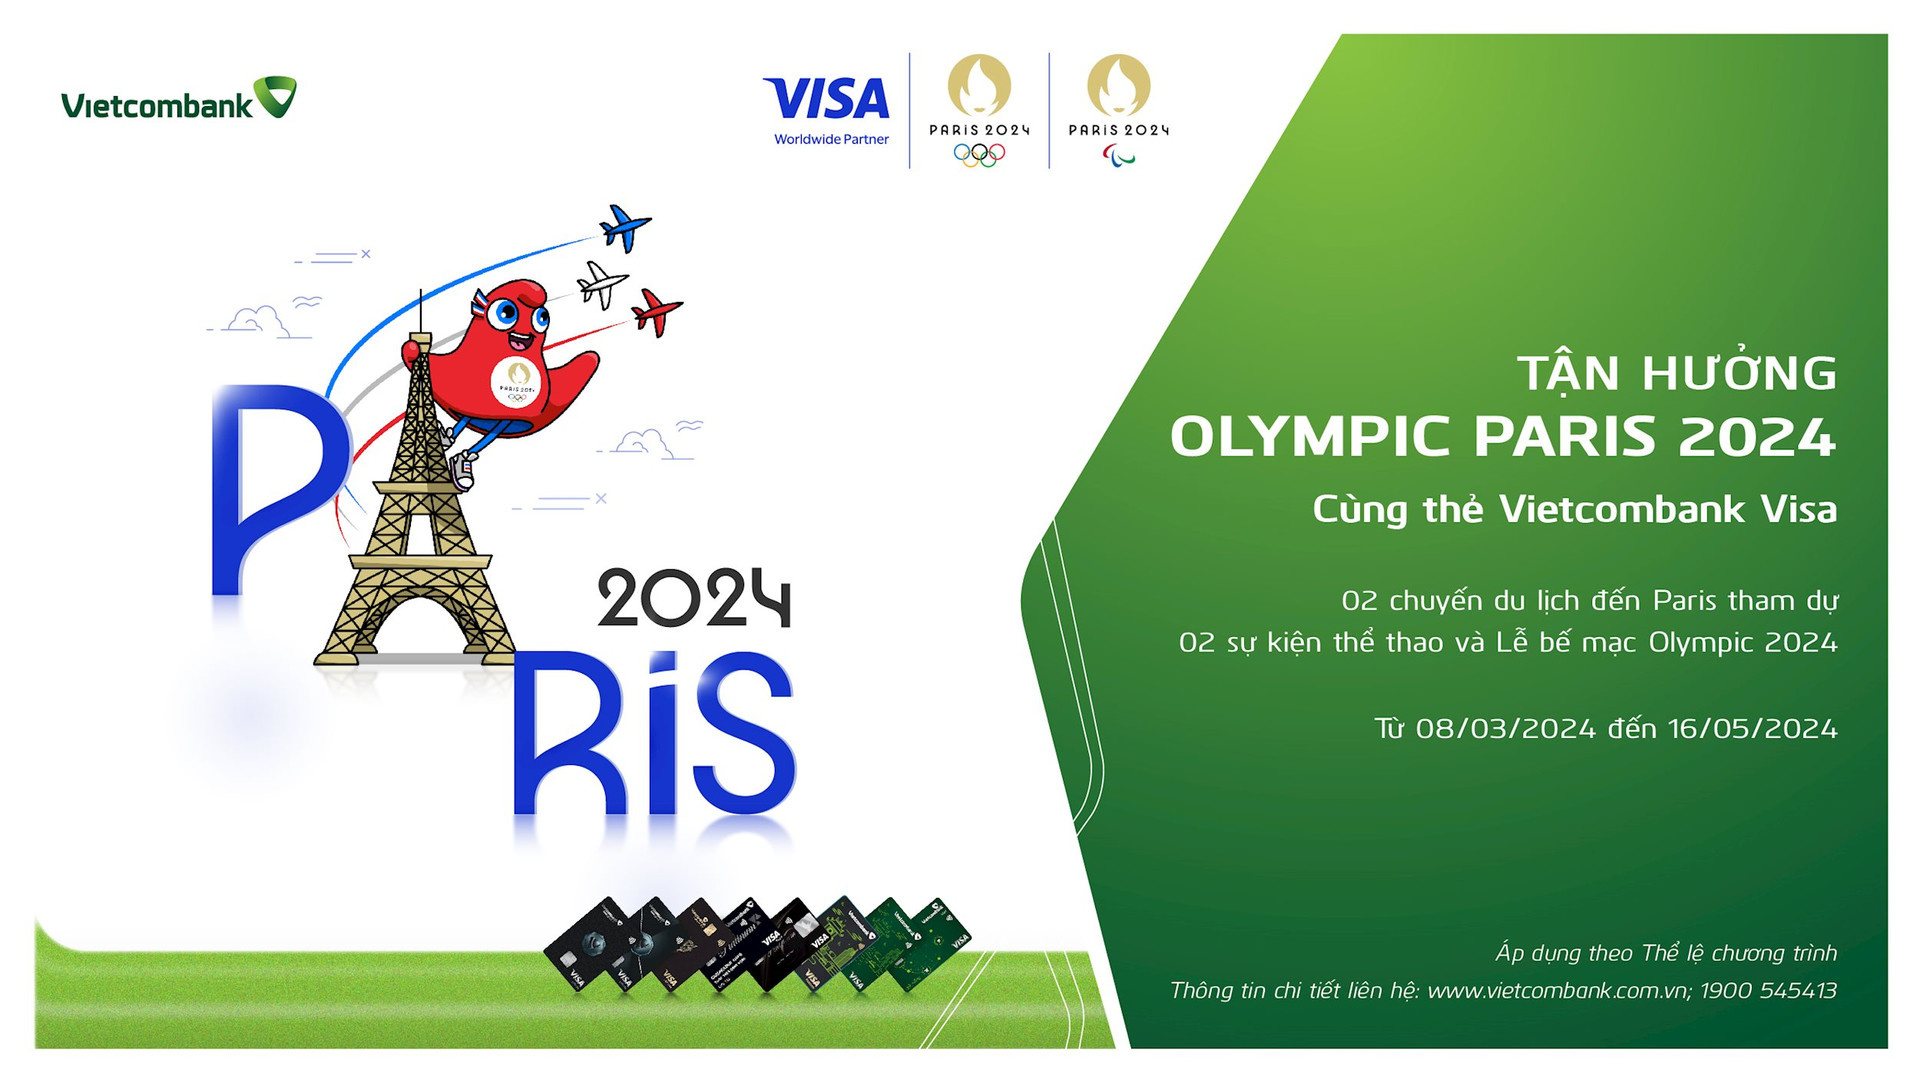 ctkm_olympic-paris-2024.jpg